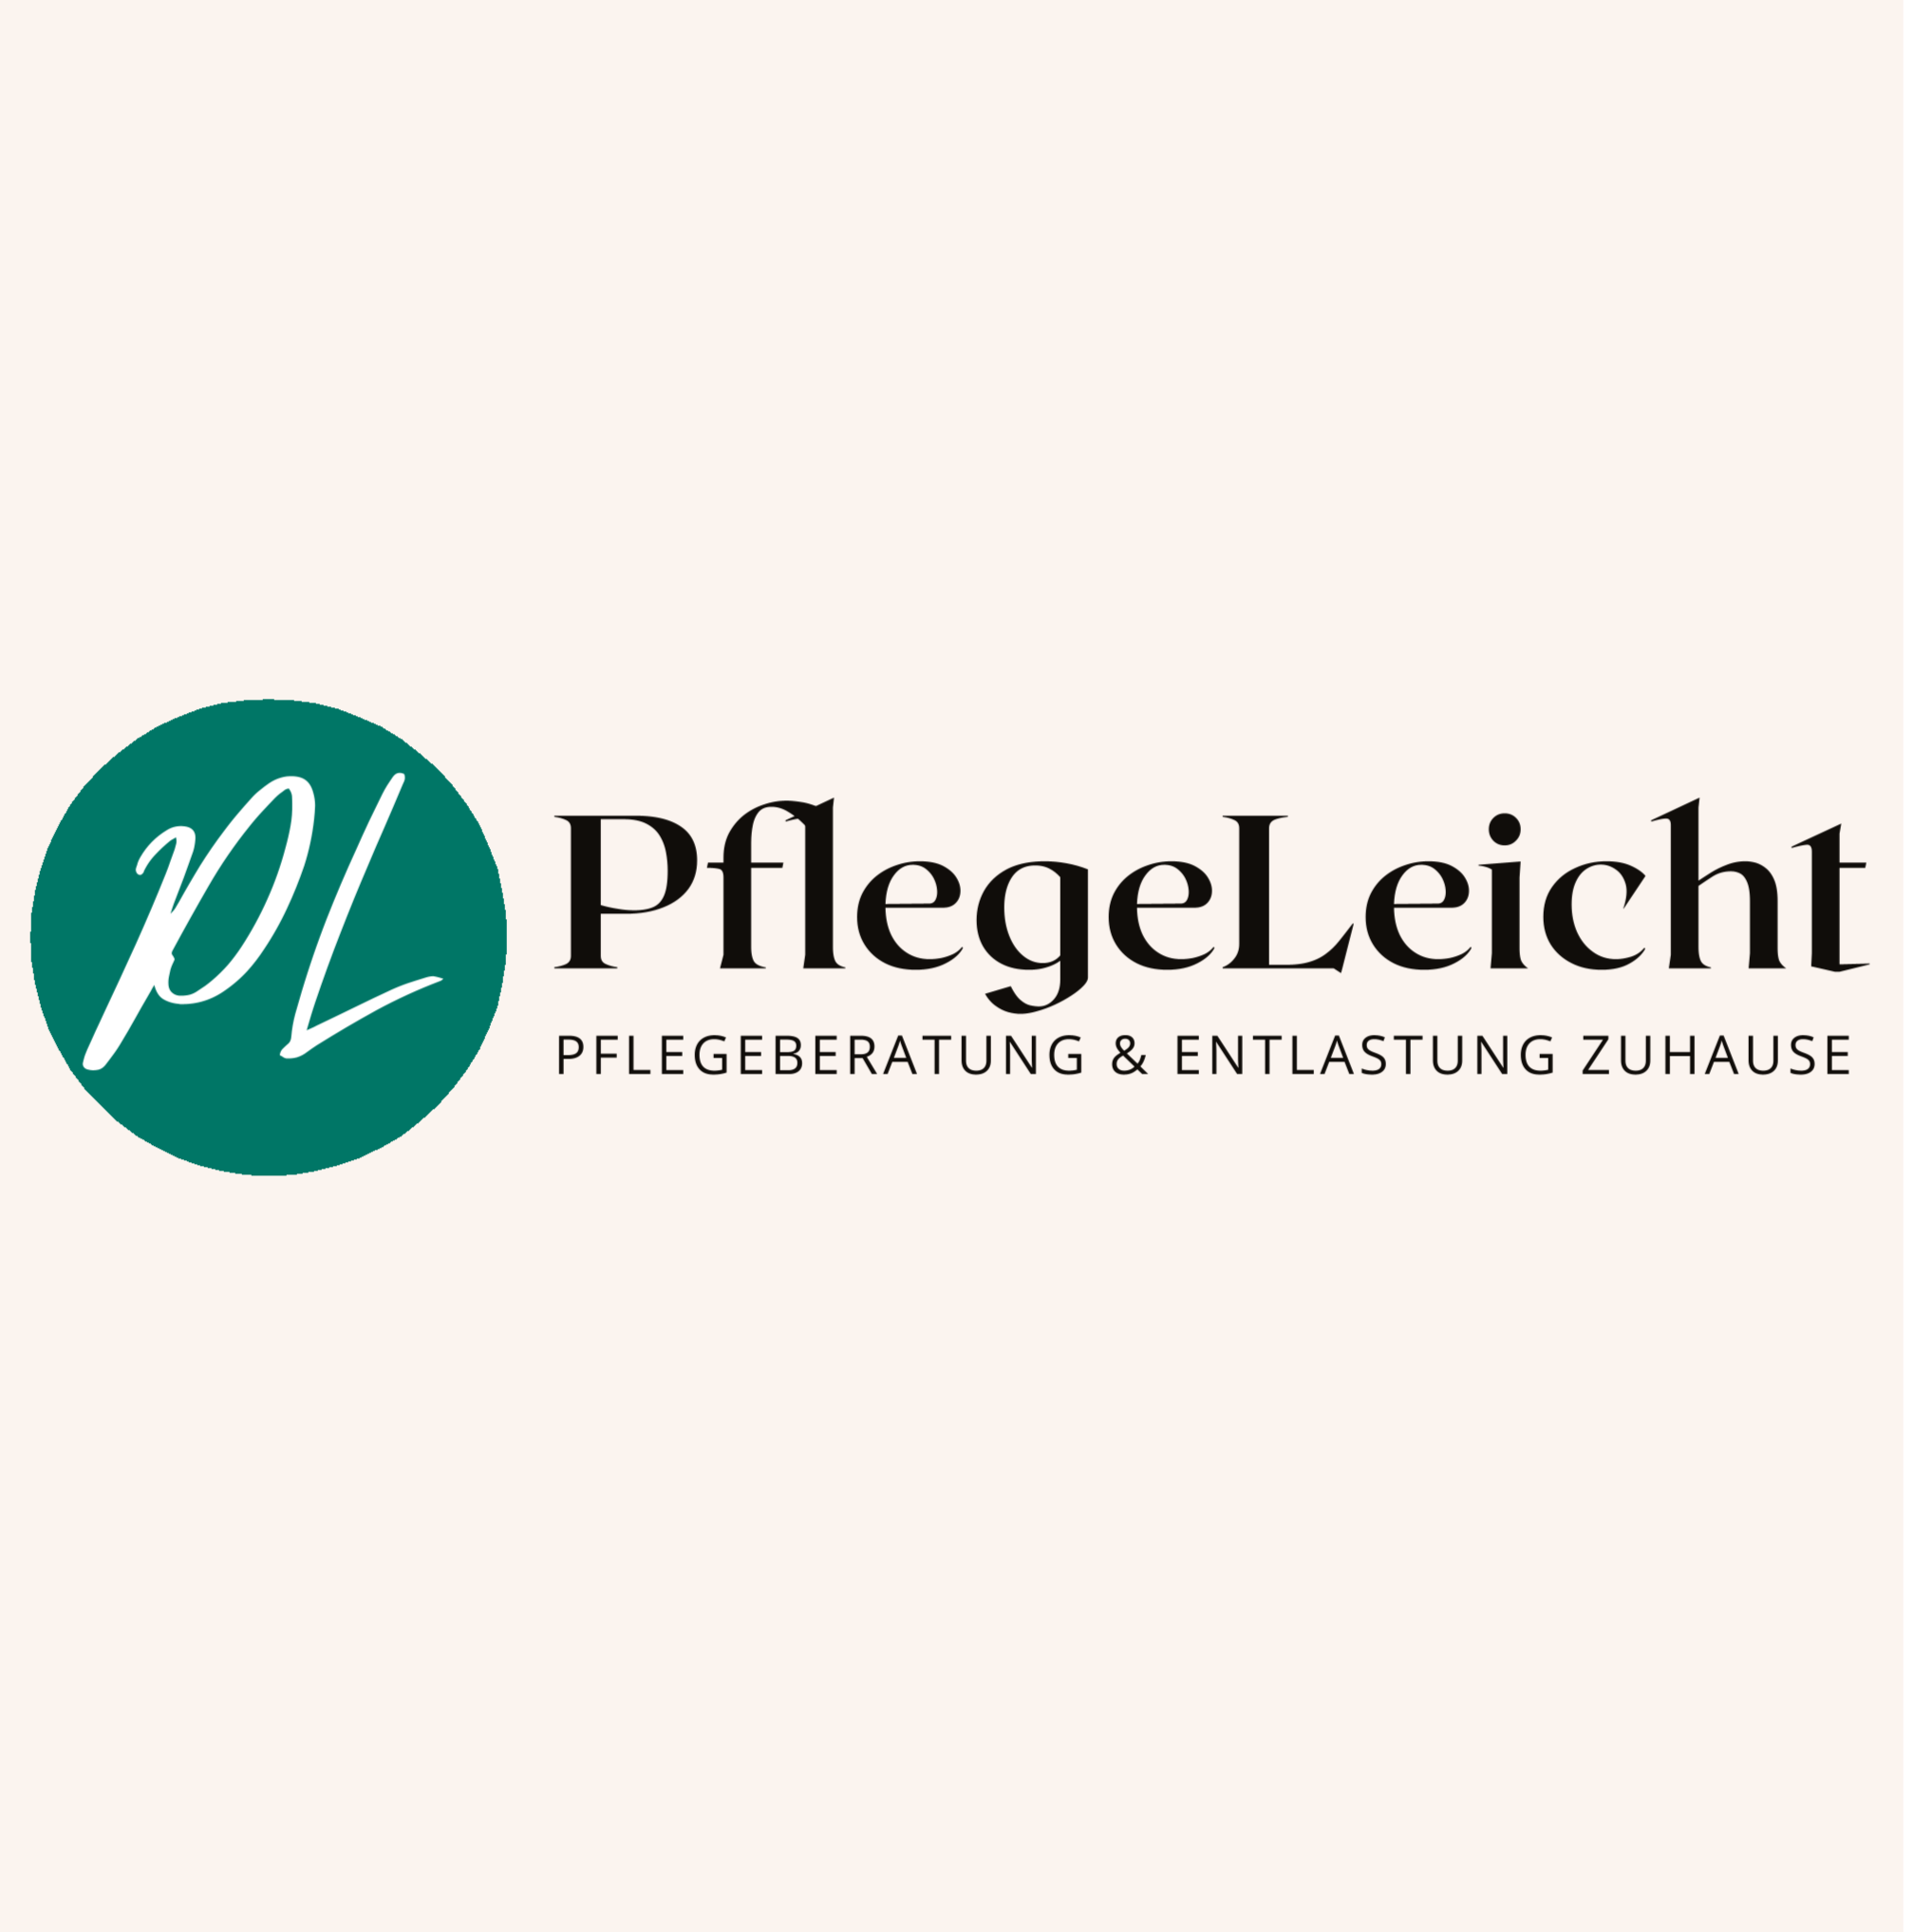 PflegeLeicht - Pflegeberatung und Entlastung Zuhause in Friedrichsruhe - Logo